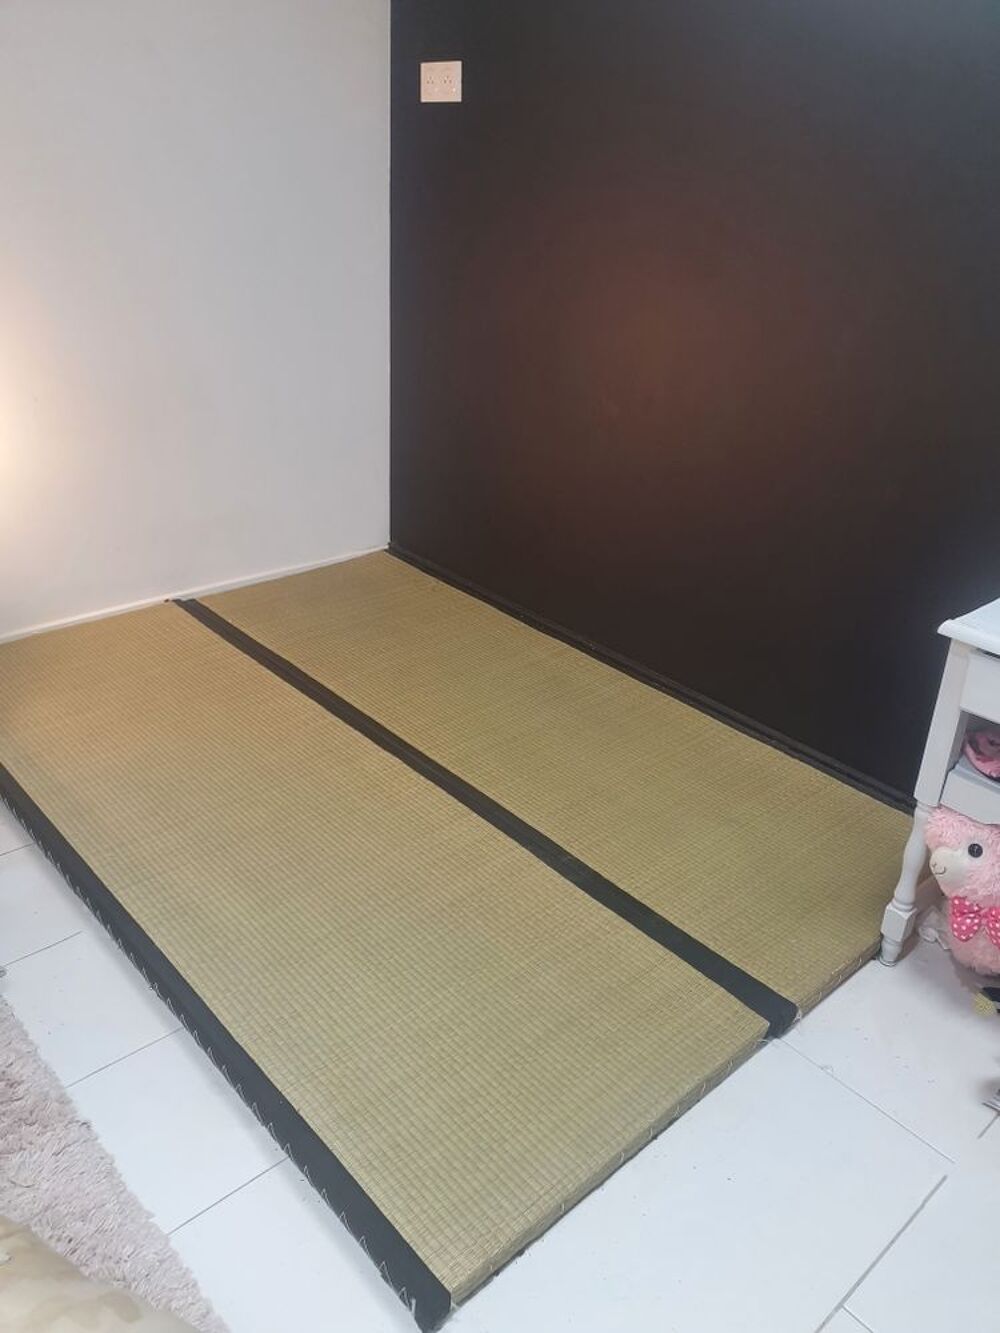 2 tatamis futon japonais 140x200cm Meubles